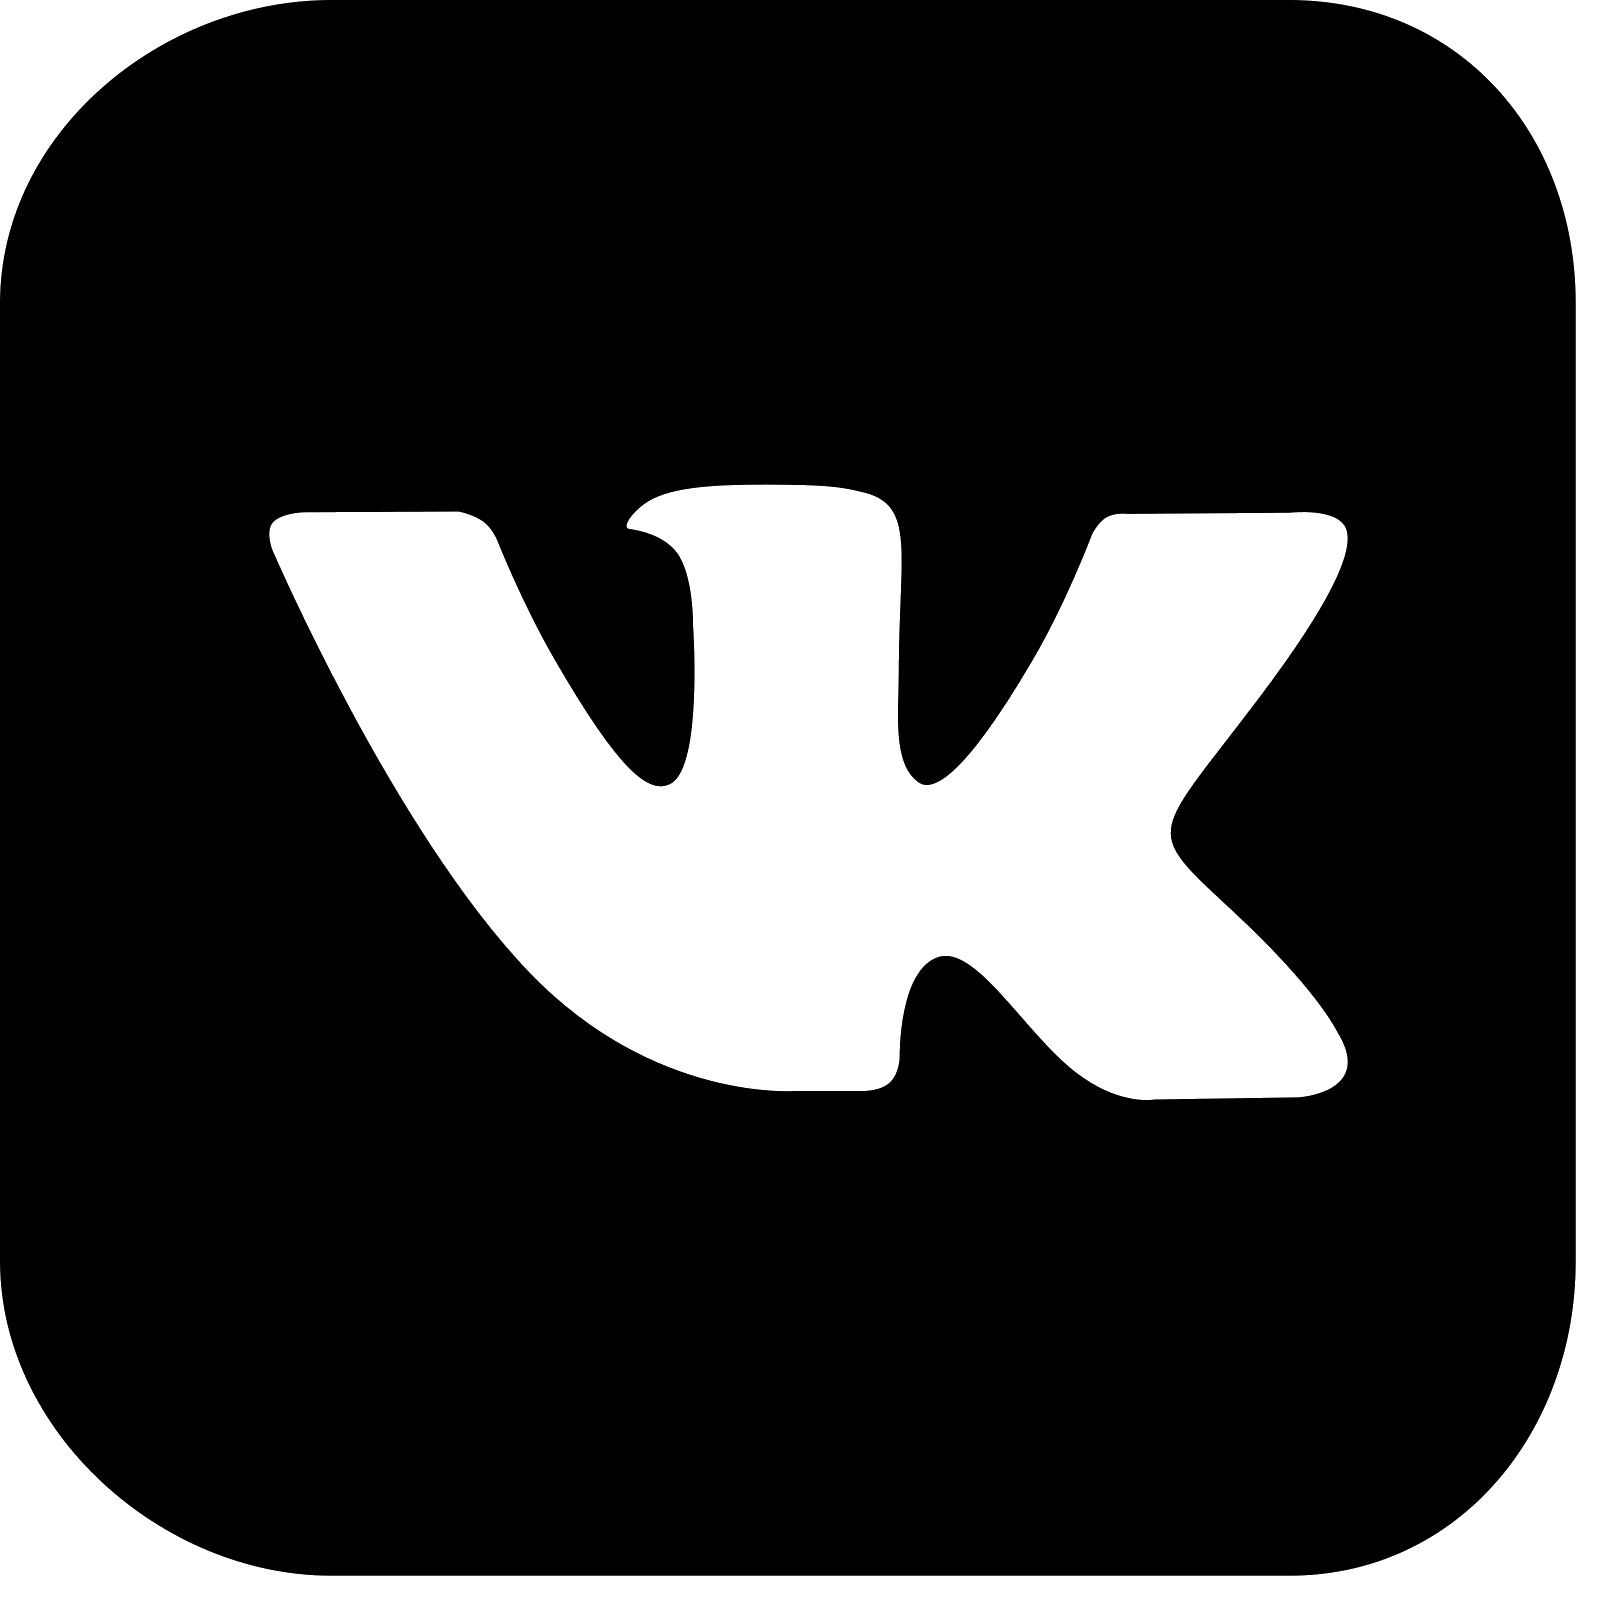 19499320 вк. Логотип ВК. Маленький значок ВК. Логотип ВК черный. Логотип ВК без фона.